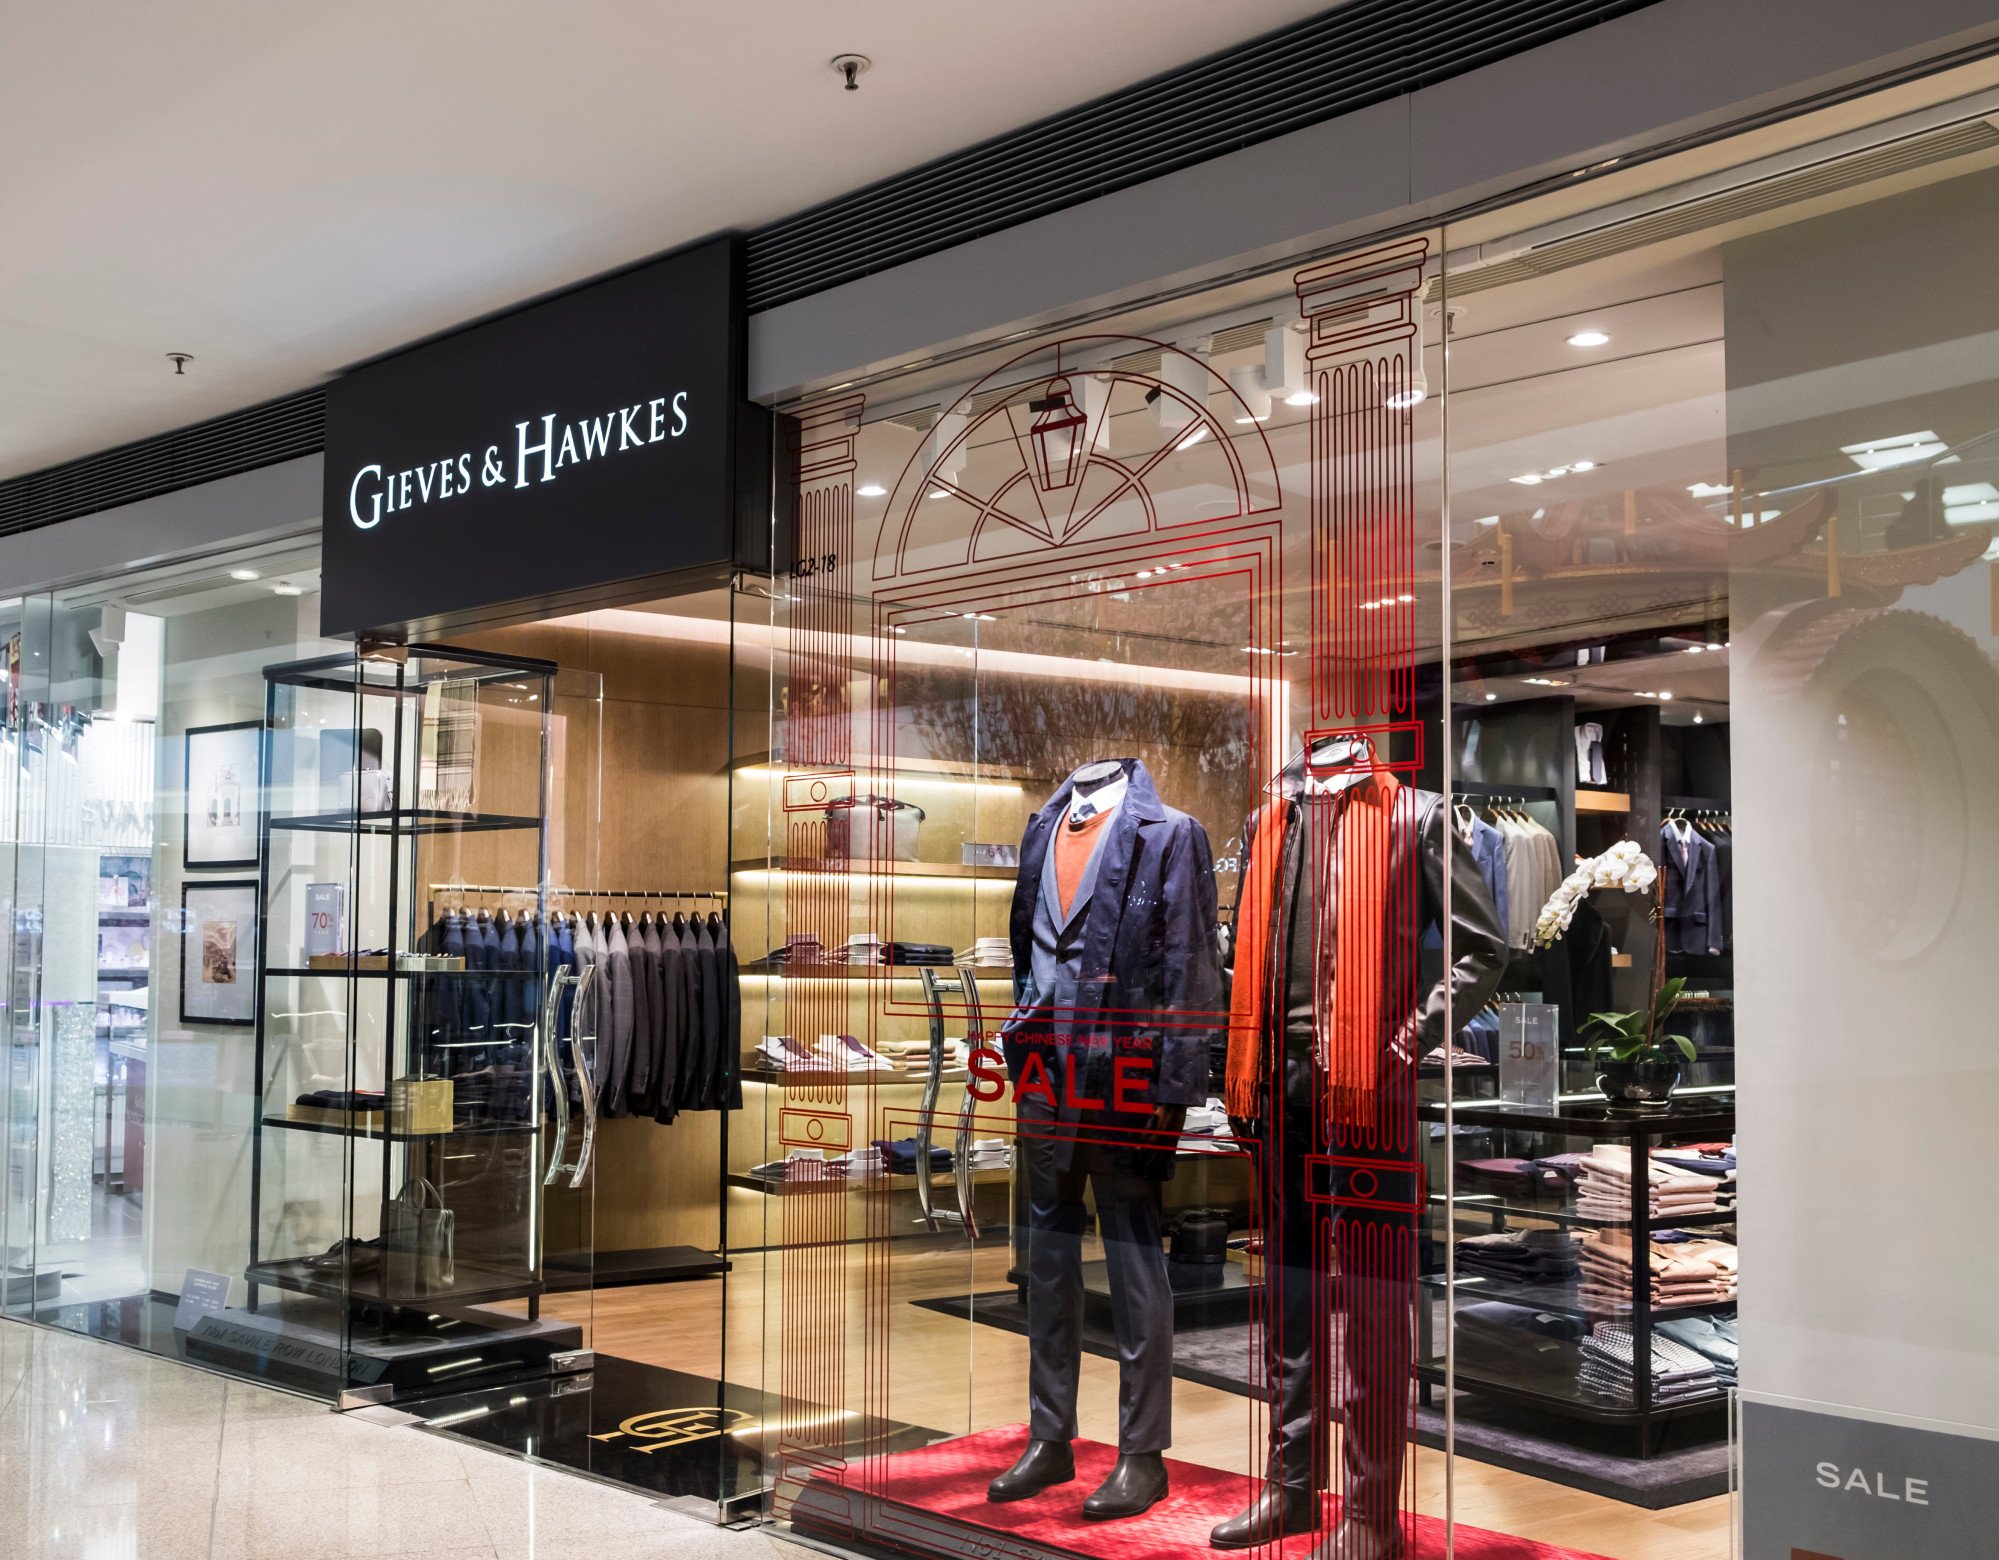 Louis Vuitton : Une boutique duty free devrait voir le jour en Chine